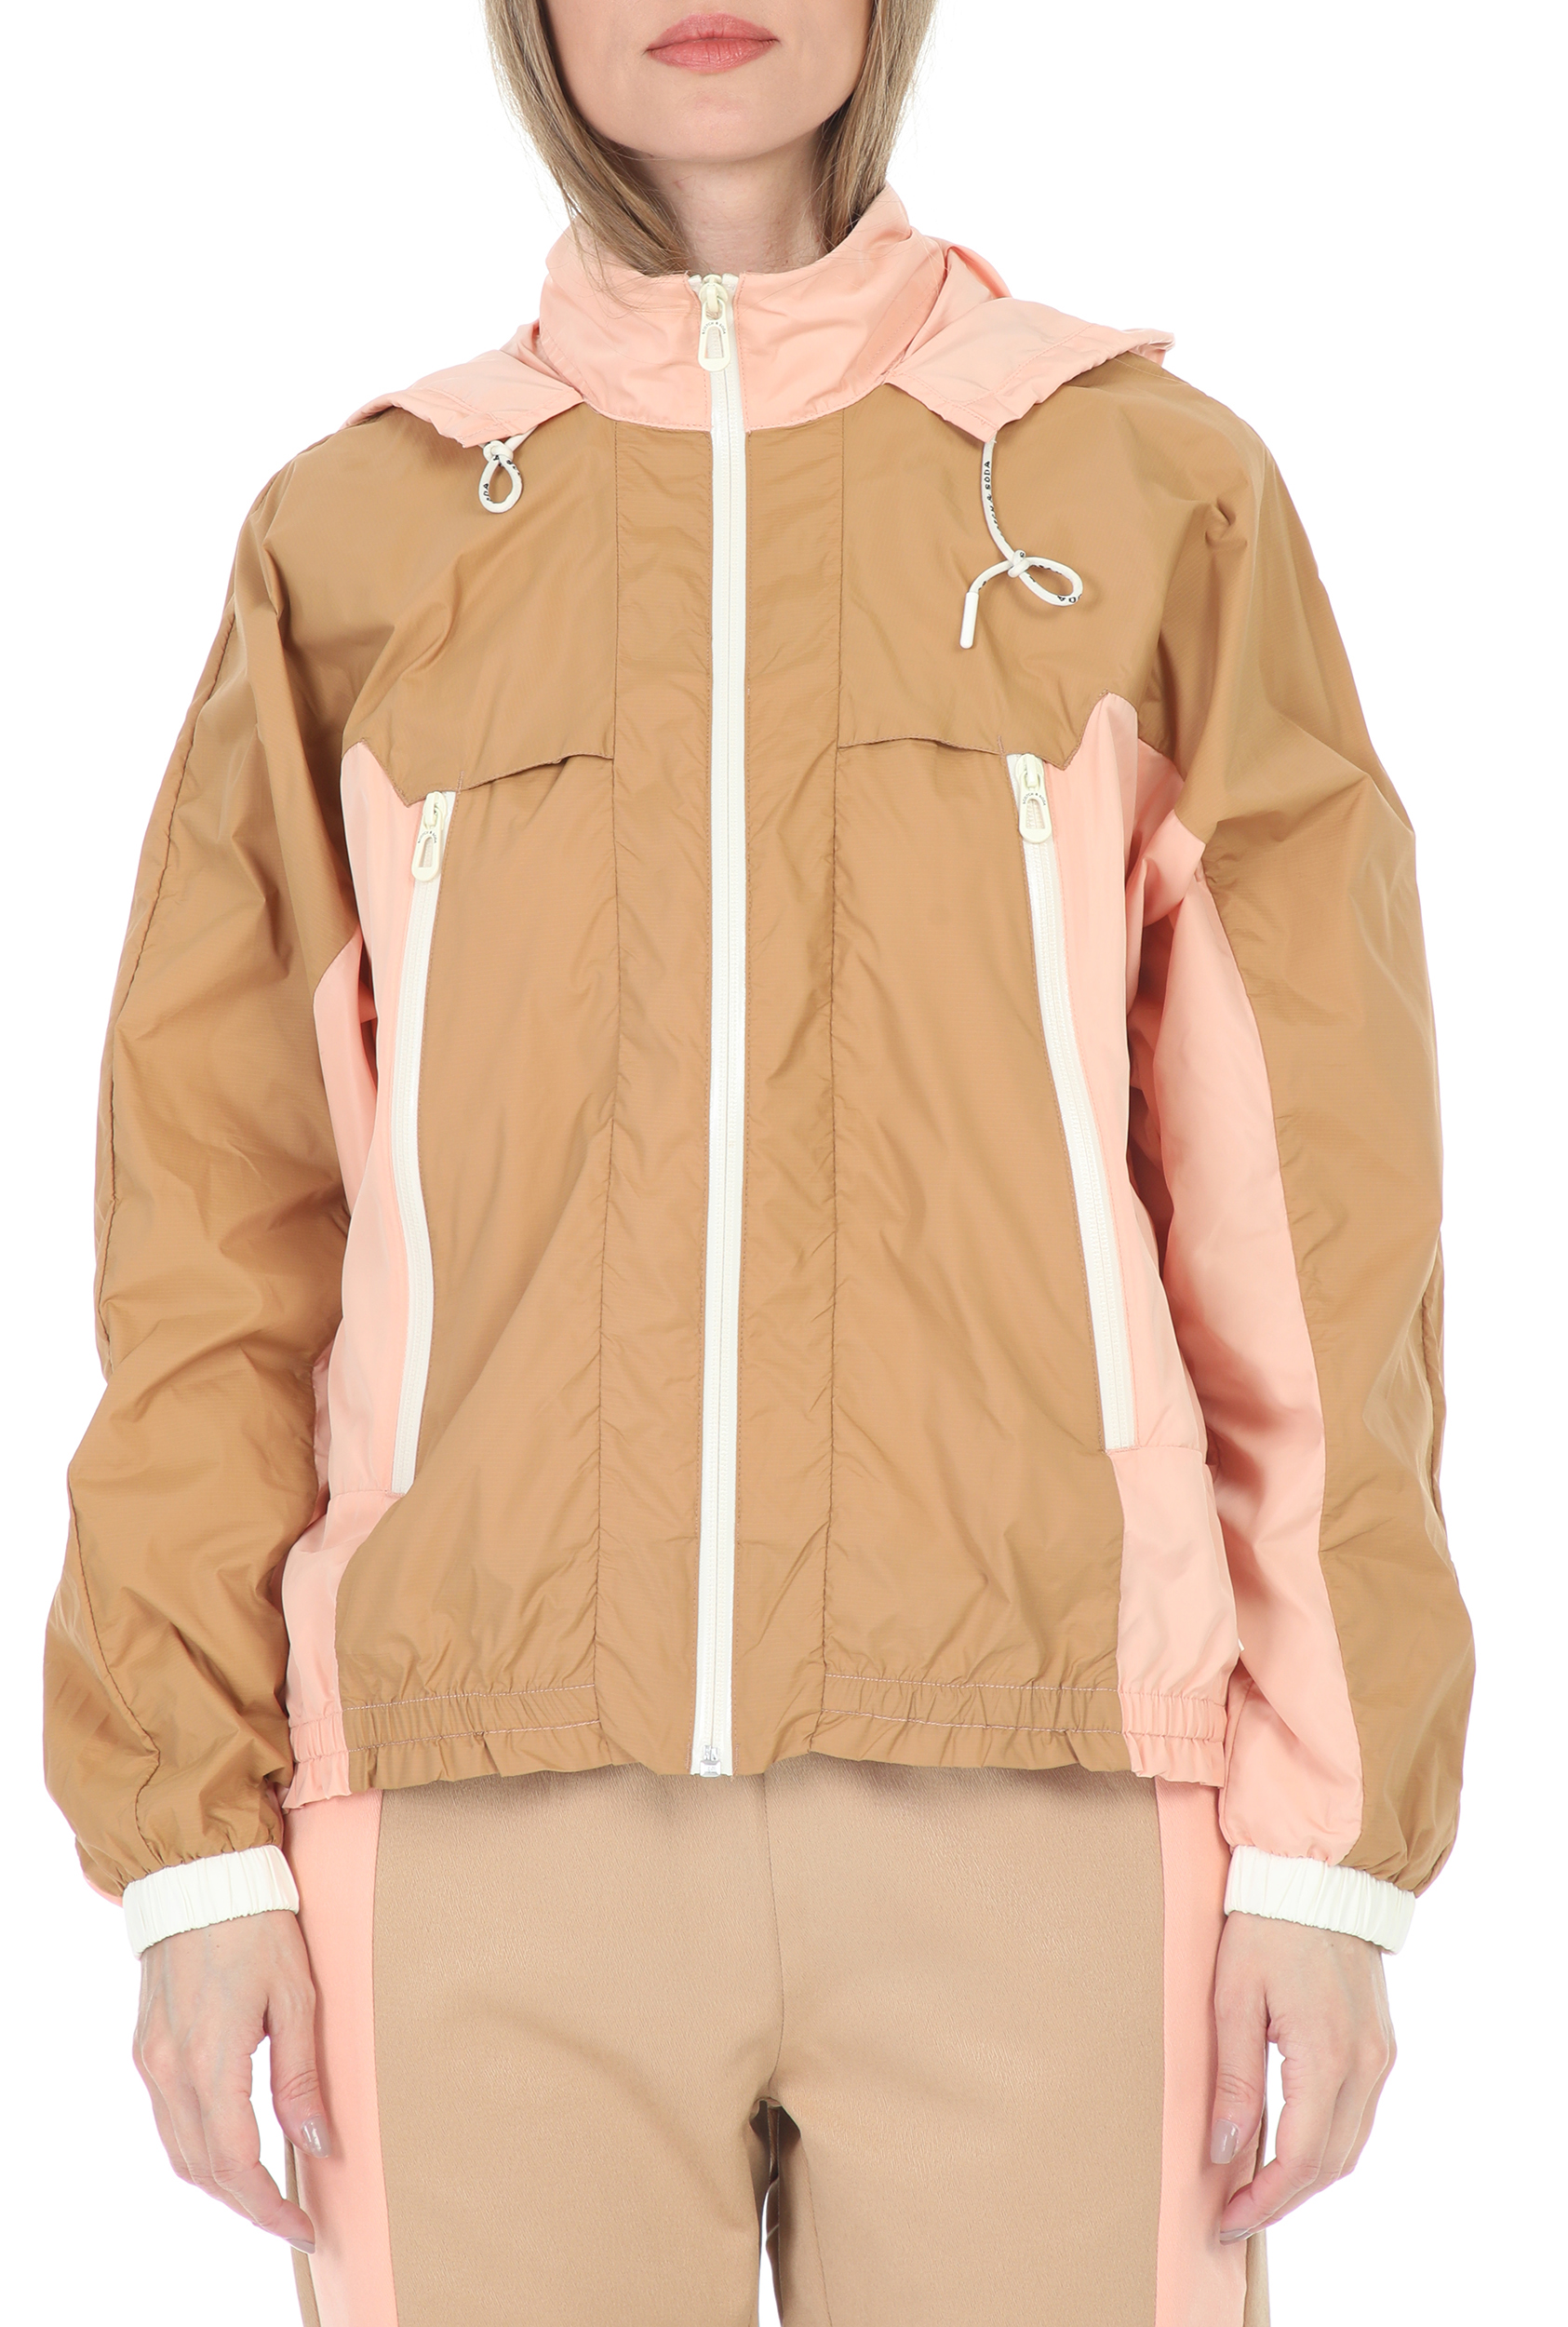 Γυναικεία/Ρούχα/Πανωφόρια/Μπουφάν SCOTCH & SODA - Γυναικείο μπουφάν SCOTCH & SODA Club nomade wind jacket μπεζ